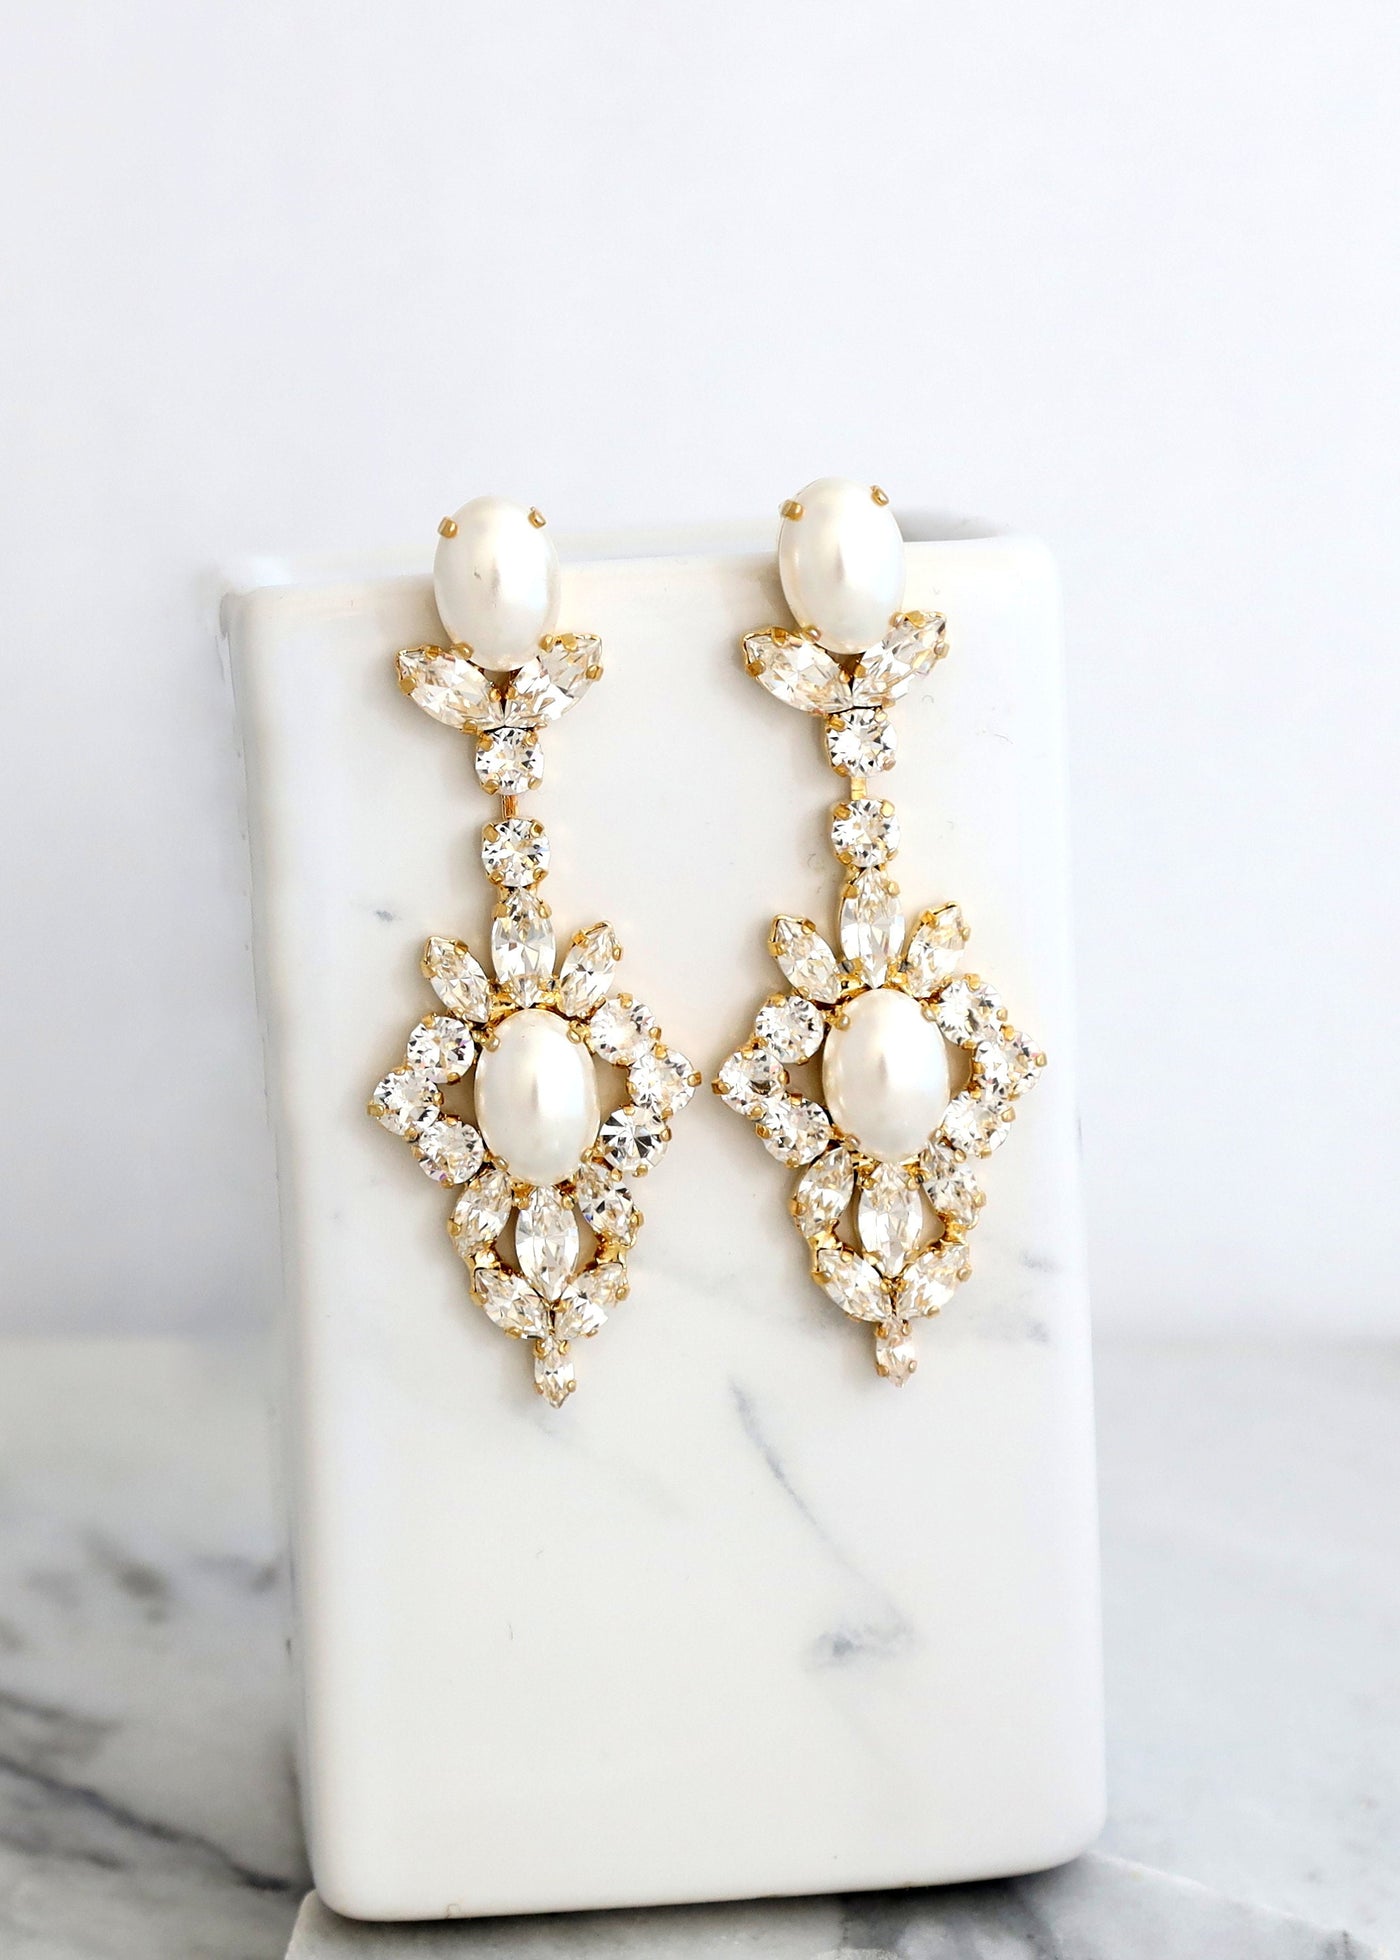 Bridal Long Crystal Earrings, Pearl Chandelier Earrings, White Pearl LONG Earrings, Bridal Statement Crystal Drop Earrings, Gift For Her